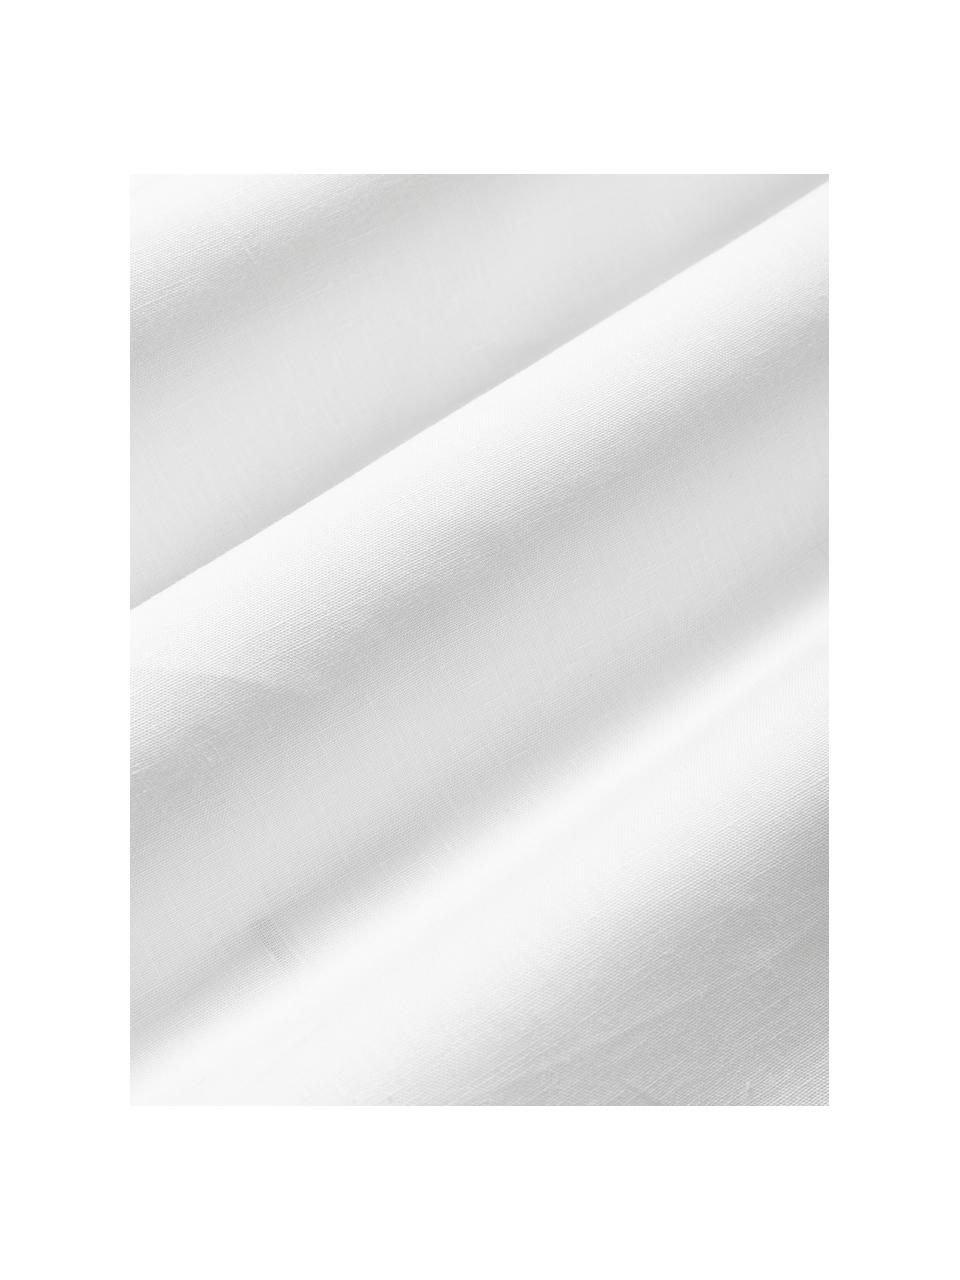 Leinen-Kissenhülle Jaylin mit Stehsaum, 100 % Leinen

Leinen hat von Natur aus eher grobe Haptik und einen natürlichen Knitterlook. Die hohe Reißfestigkeit macht Leinen scheuerfest und strapazierfähig.

Das in diesem Produkt verwendete Material ist schadstoffgeprüft und zertifiziert nach STANDARD 100 by OEKO-TEX®, 6760CIT, CITEVE., Weiß, B 30 x L 50 cm